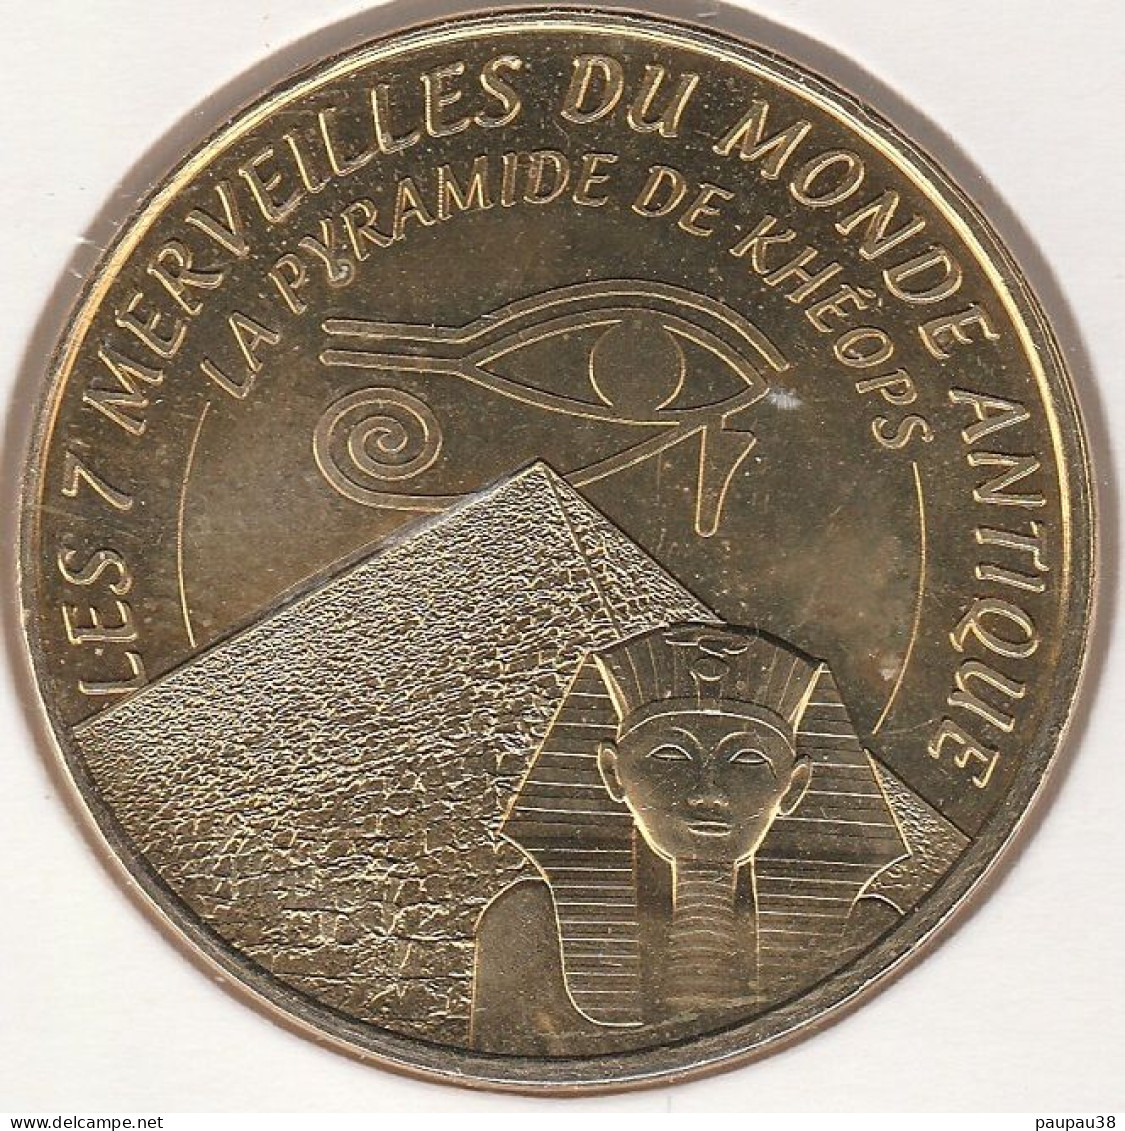 MONNAIE DE PARIS 2015 - 13 AUBAGNE Les 7 Merveilles Du Monde Antique - La Pyramide De Khéops - 2015